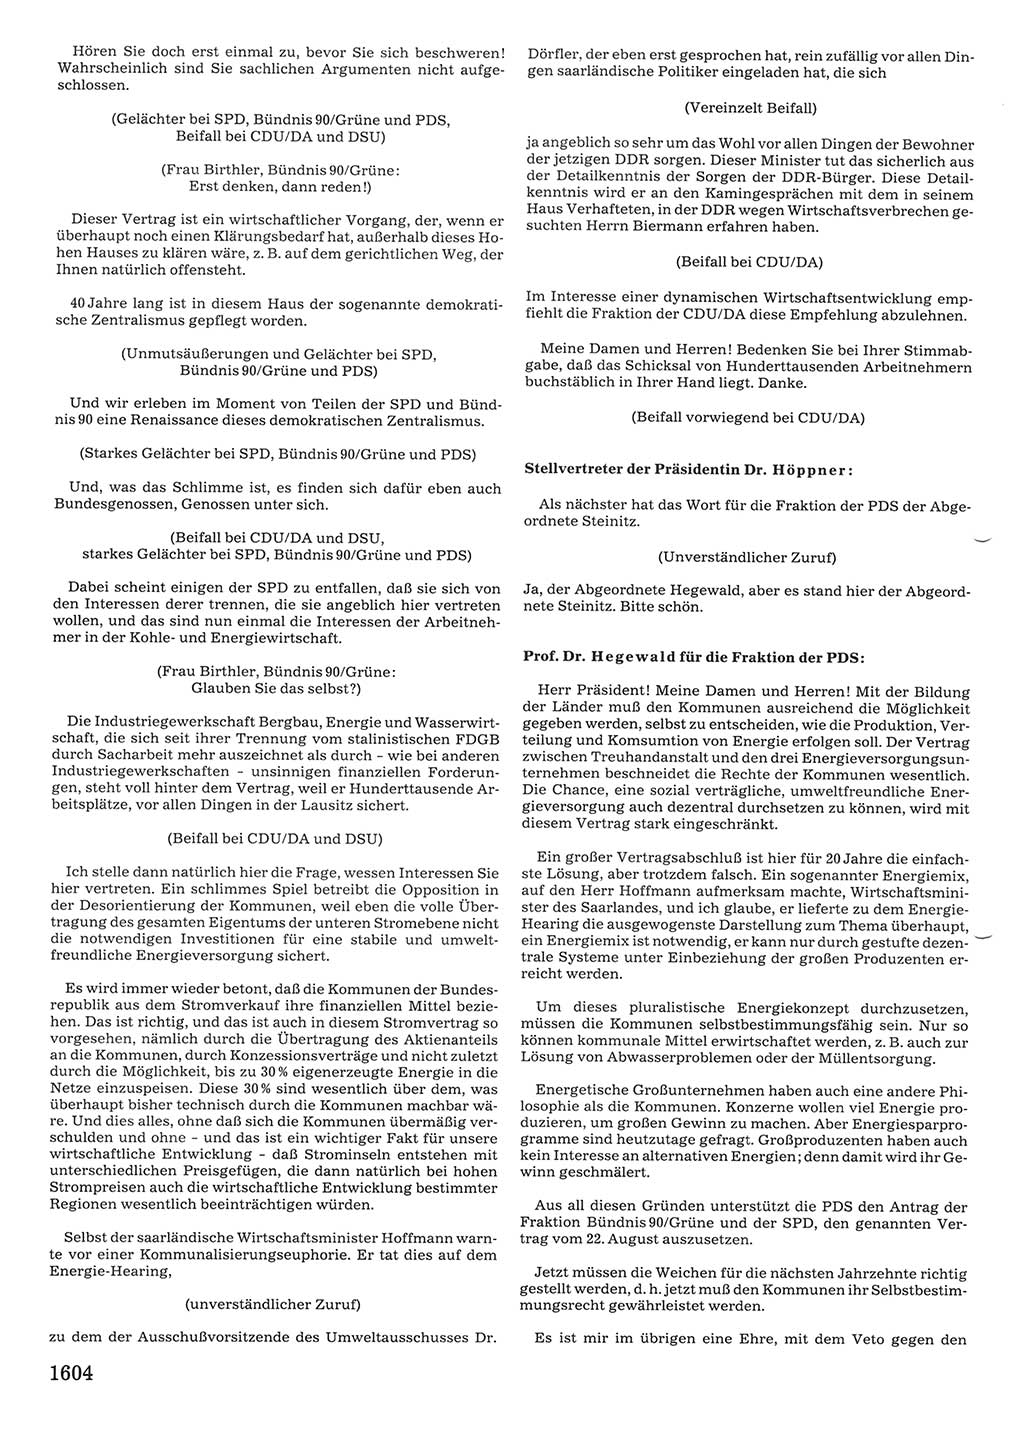 Tagungen der Volkskammer (VK) der Deutschen Demokratischen Republik (DDR), 10. Wahlperiode 1990, Seite 1604 (VK. DDR 10. WP. 1990, Prot. Tg. 1-38, 5.4.-2.10.1990, S. 1604)